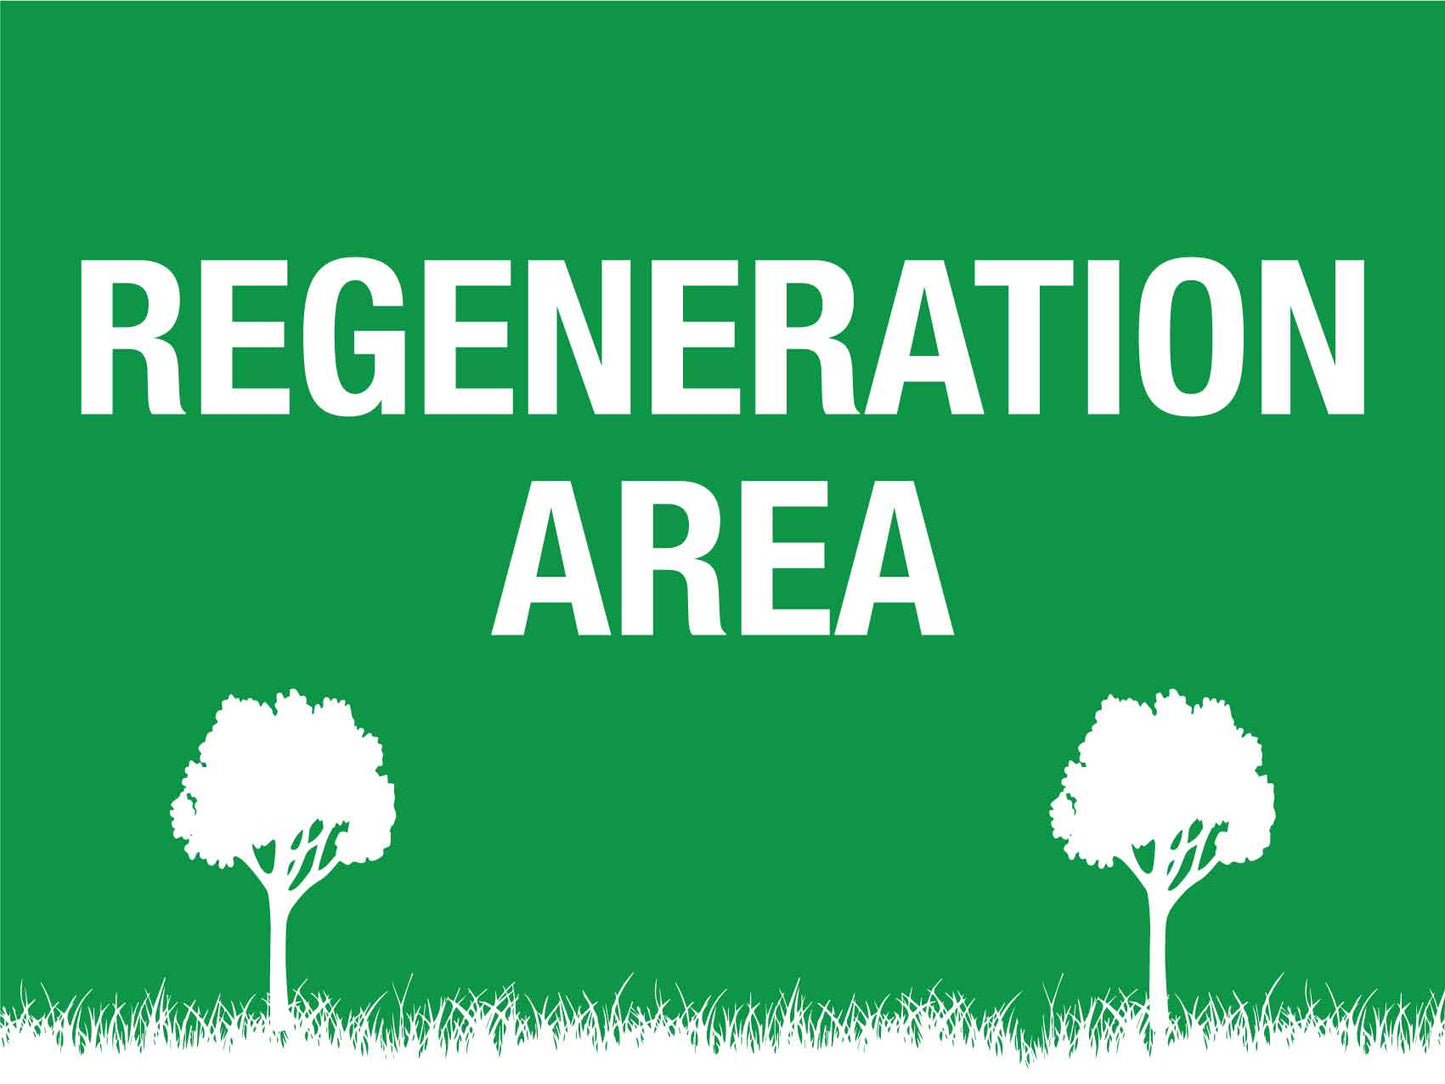 Regeneration Area Sign